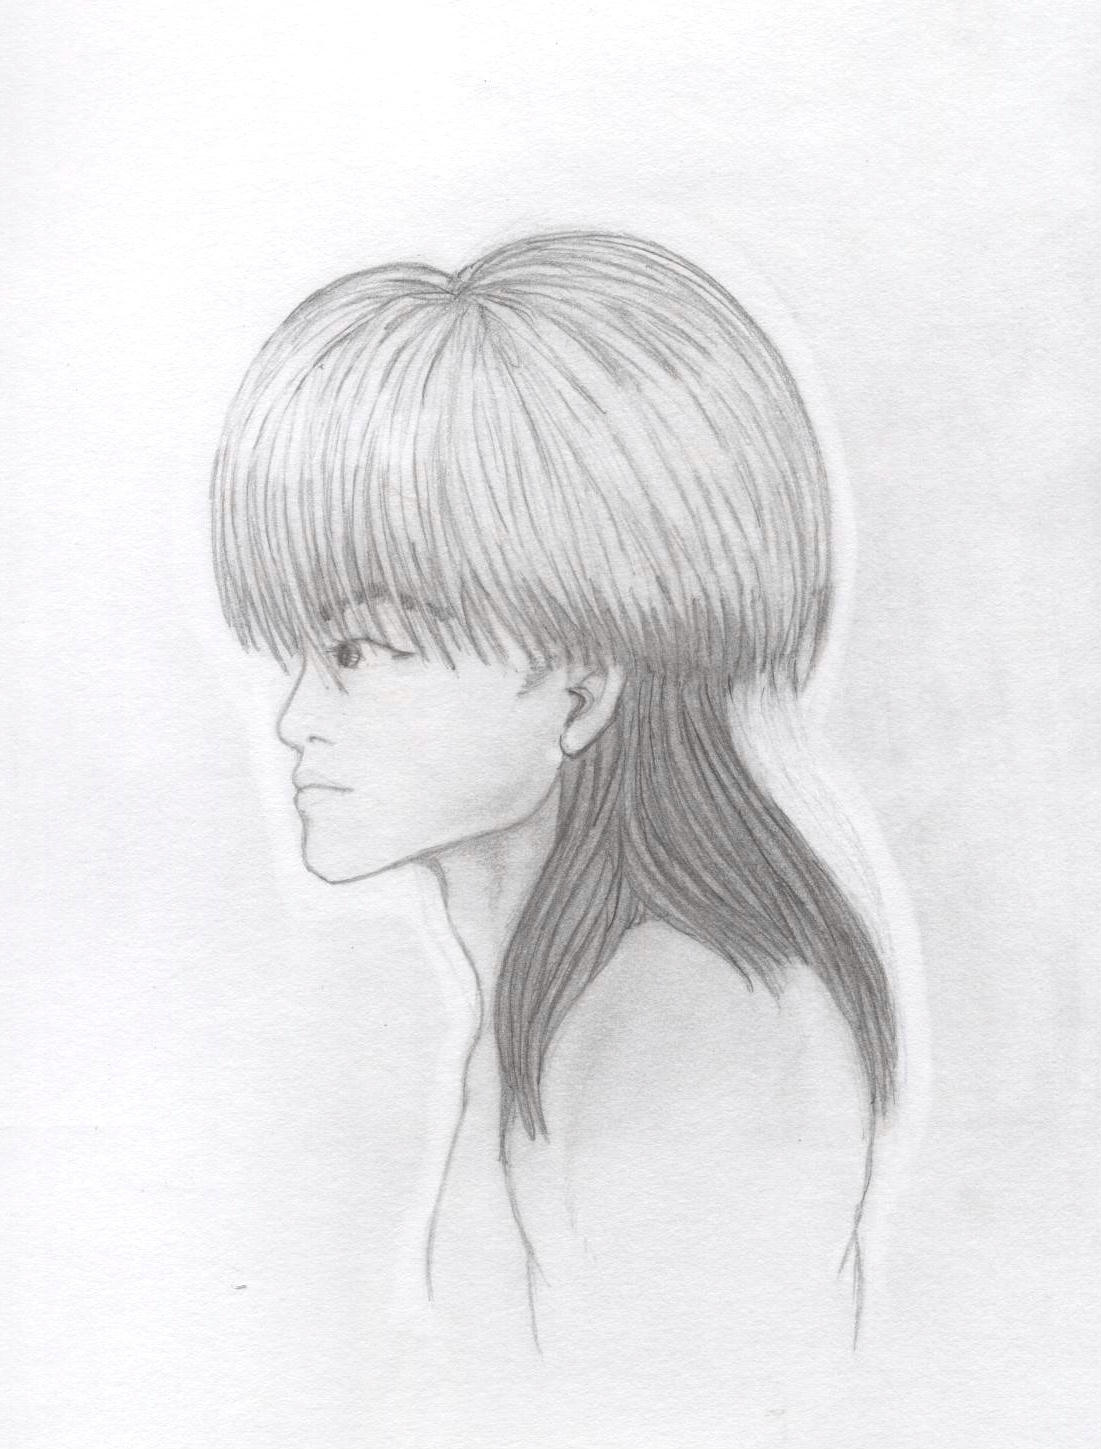 Makoto profile 2 by Ran_The_Hyena